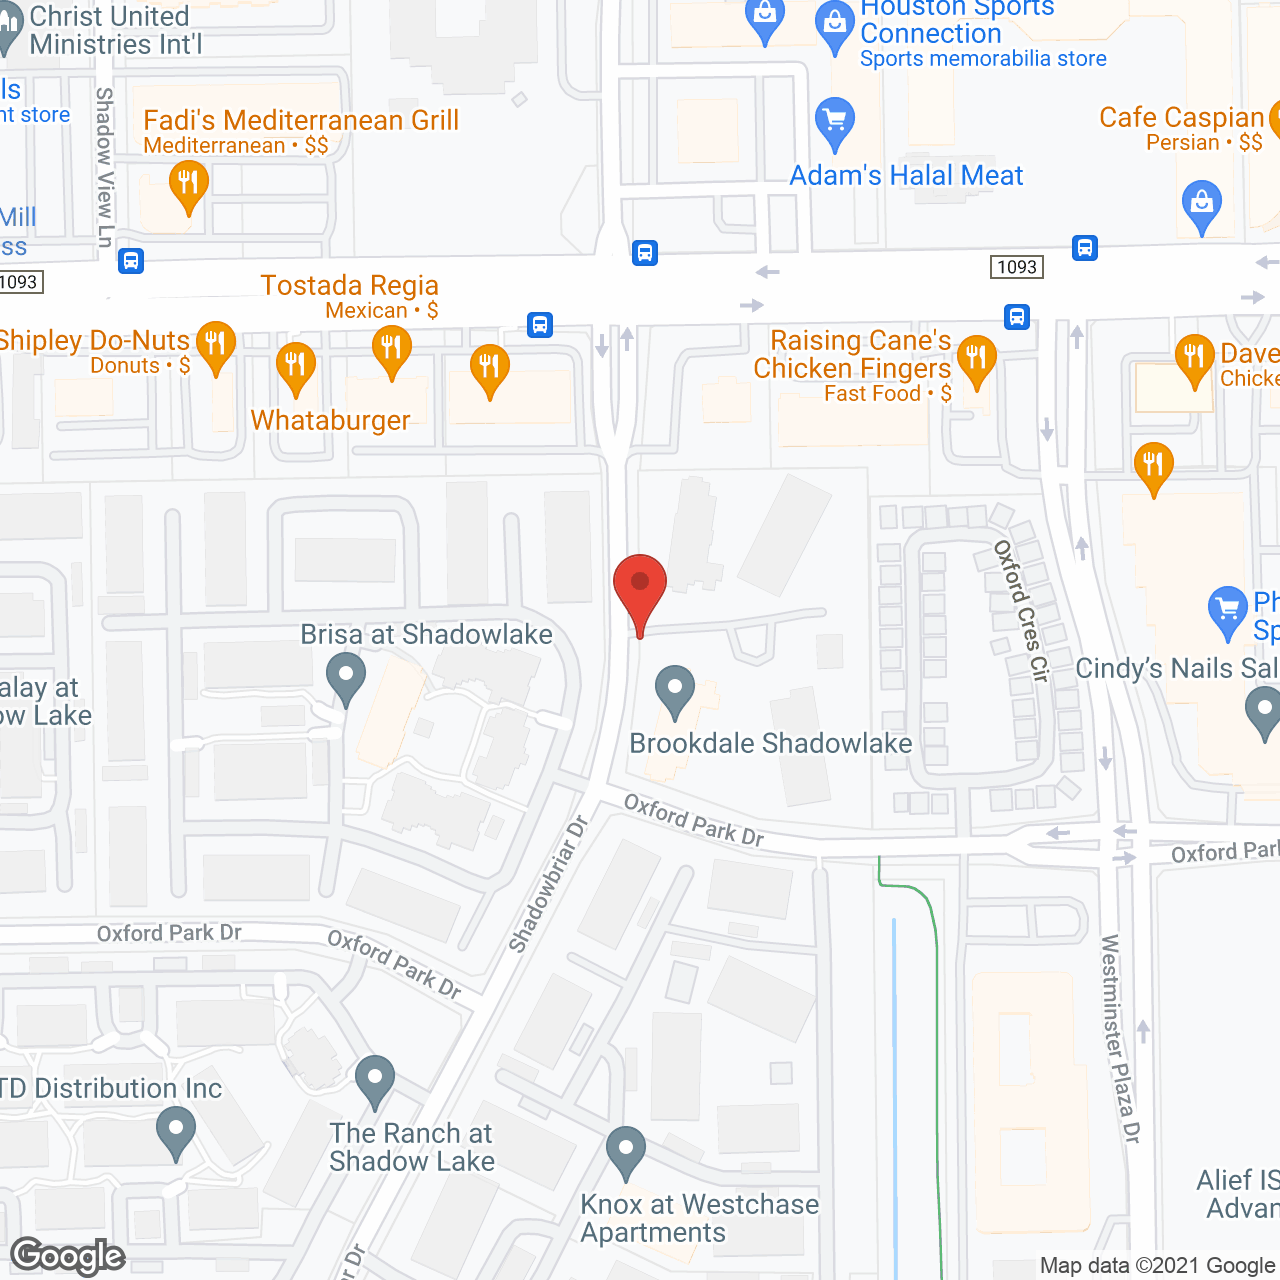 Brookdale Shadowlake in google map